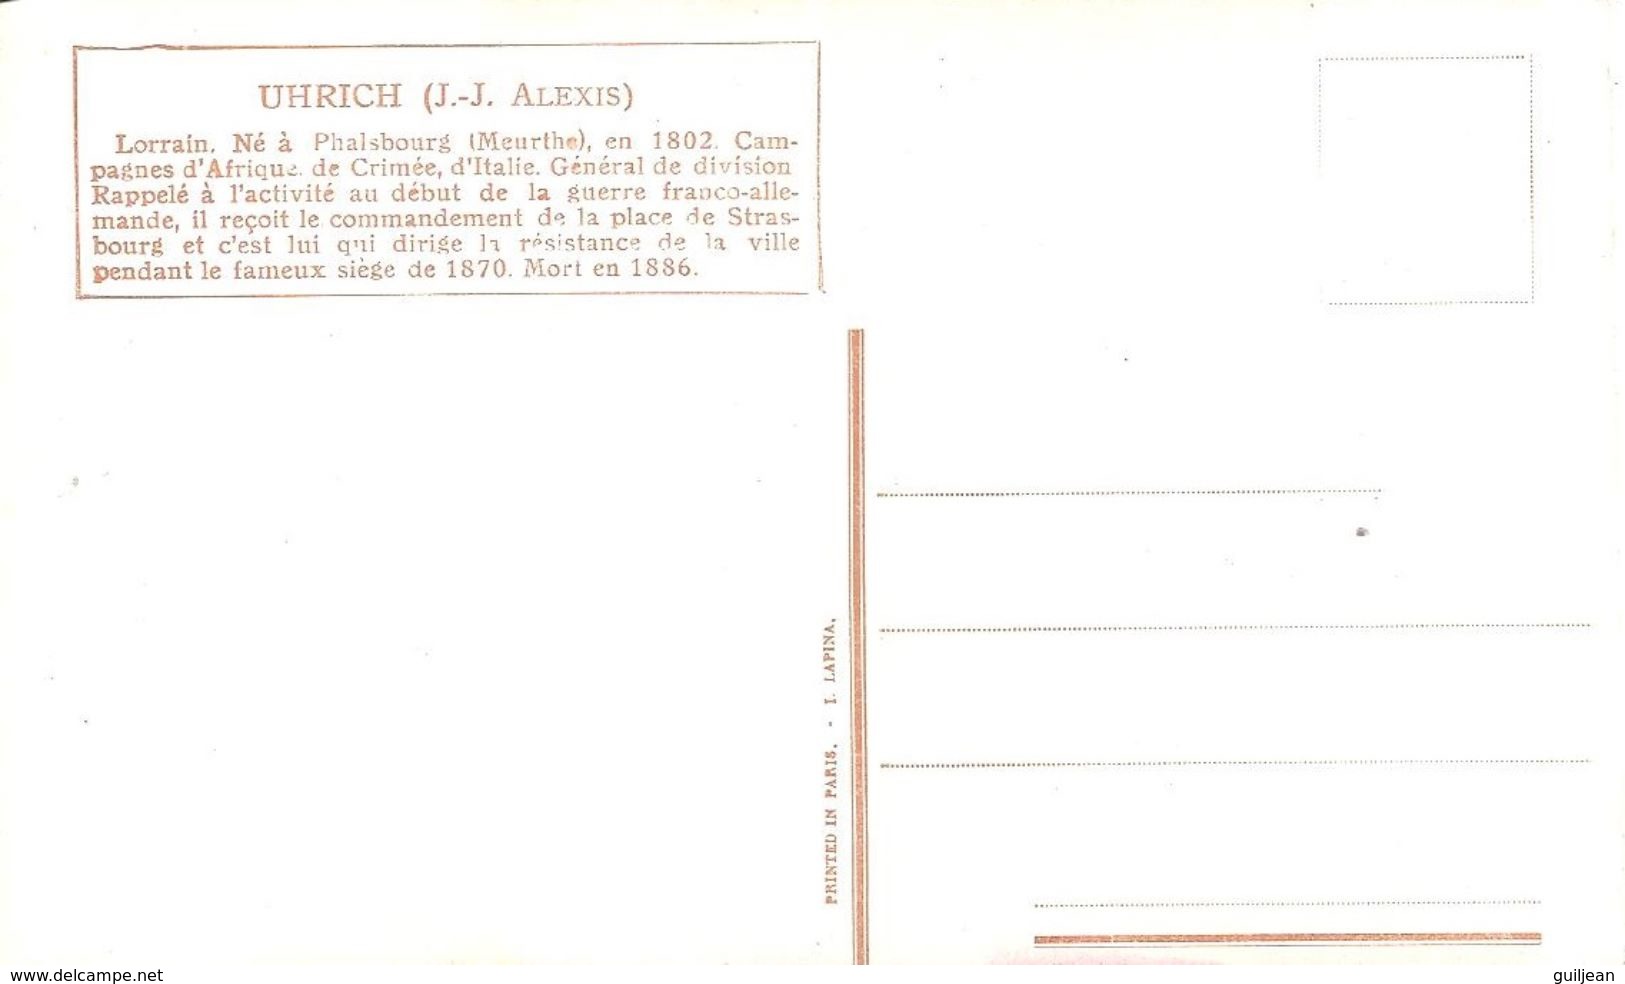 Illustrateur L. VALLET - Militaria 1870  : UHRICH (J.J. ALEXIS) Lorrain - Vallet, L.